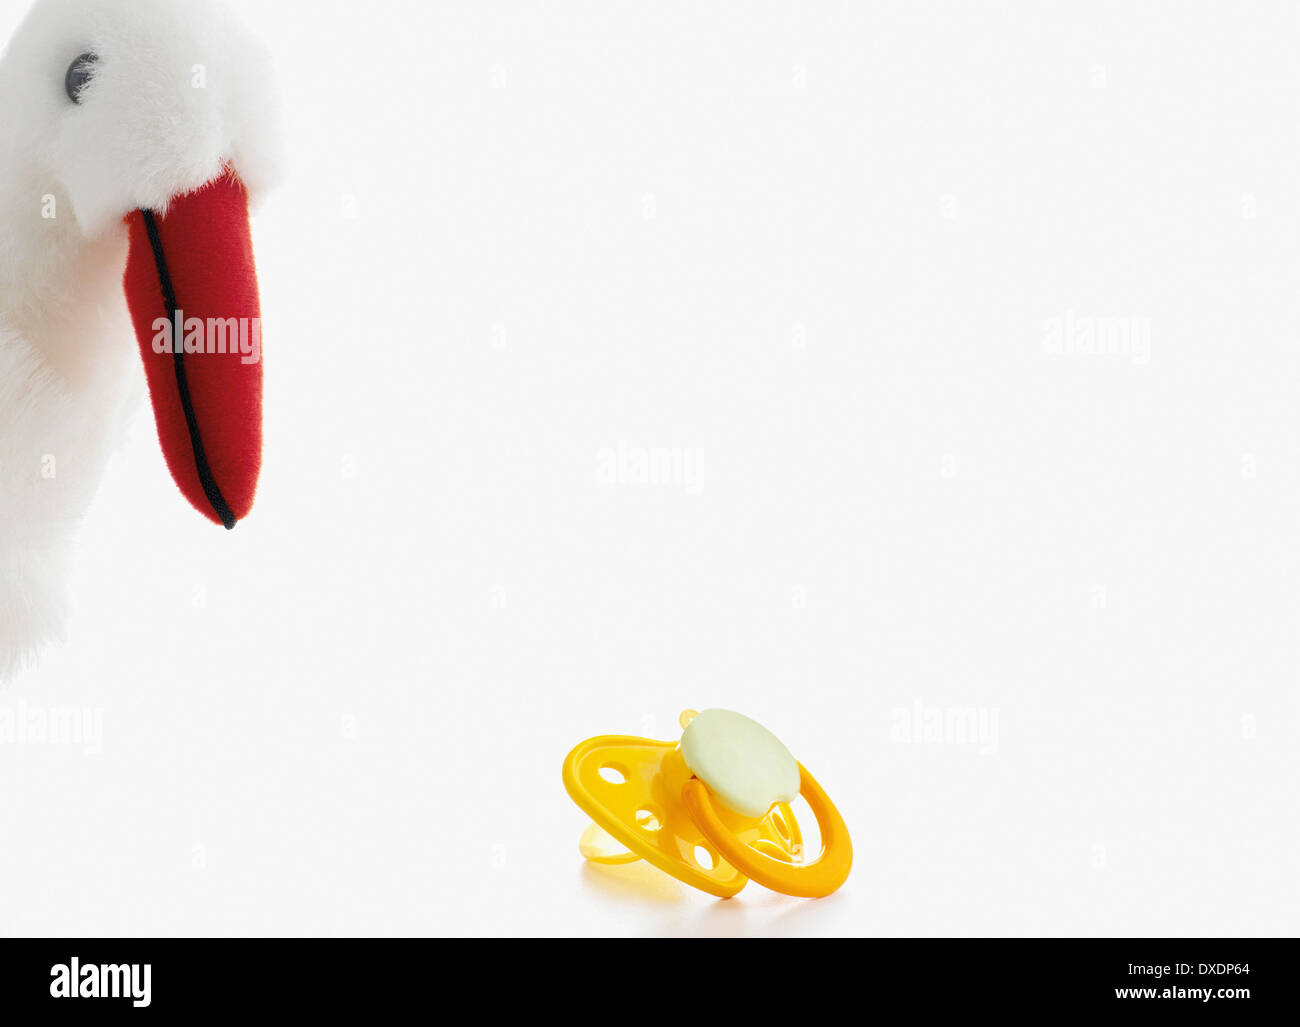 Giocattolo imbottito, Stork con succhietto, su sfondo bianco, studio shot Foto Stock